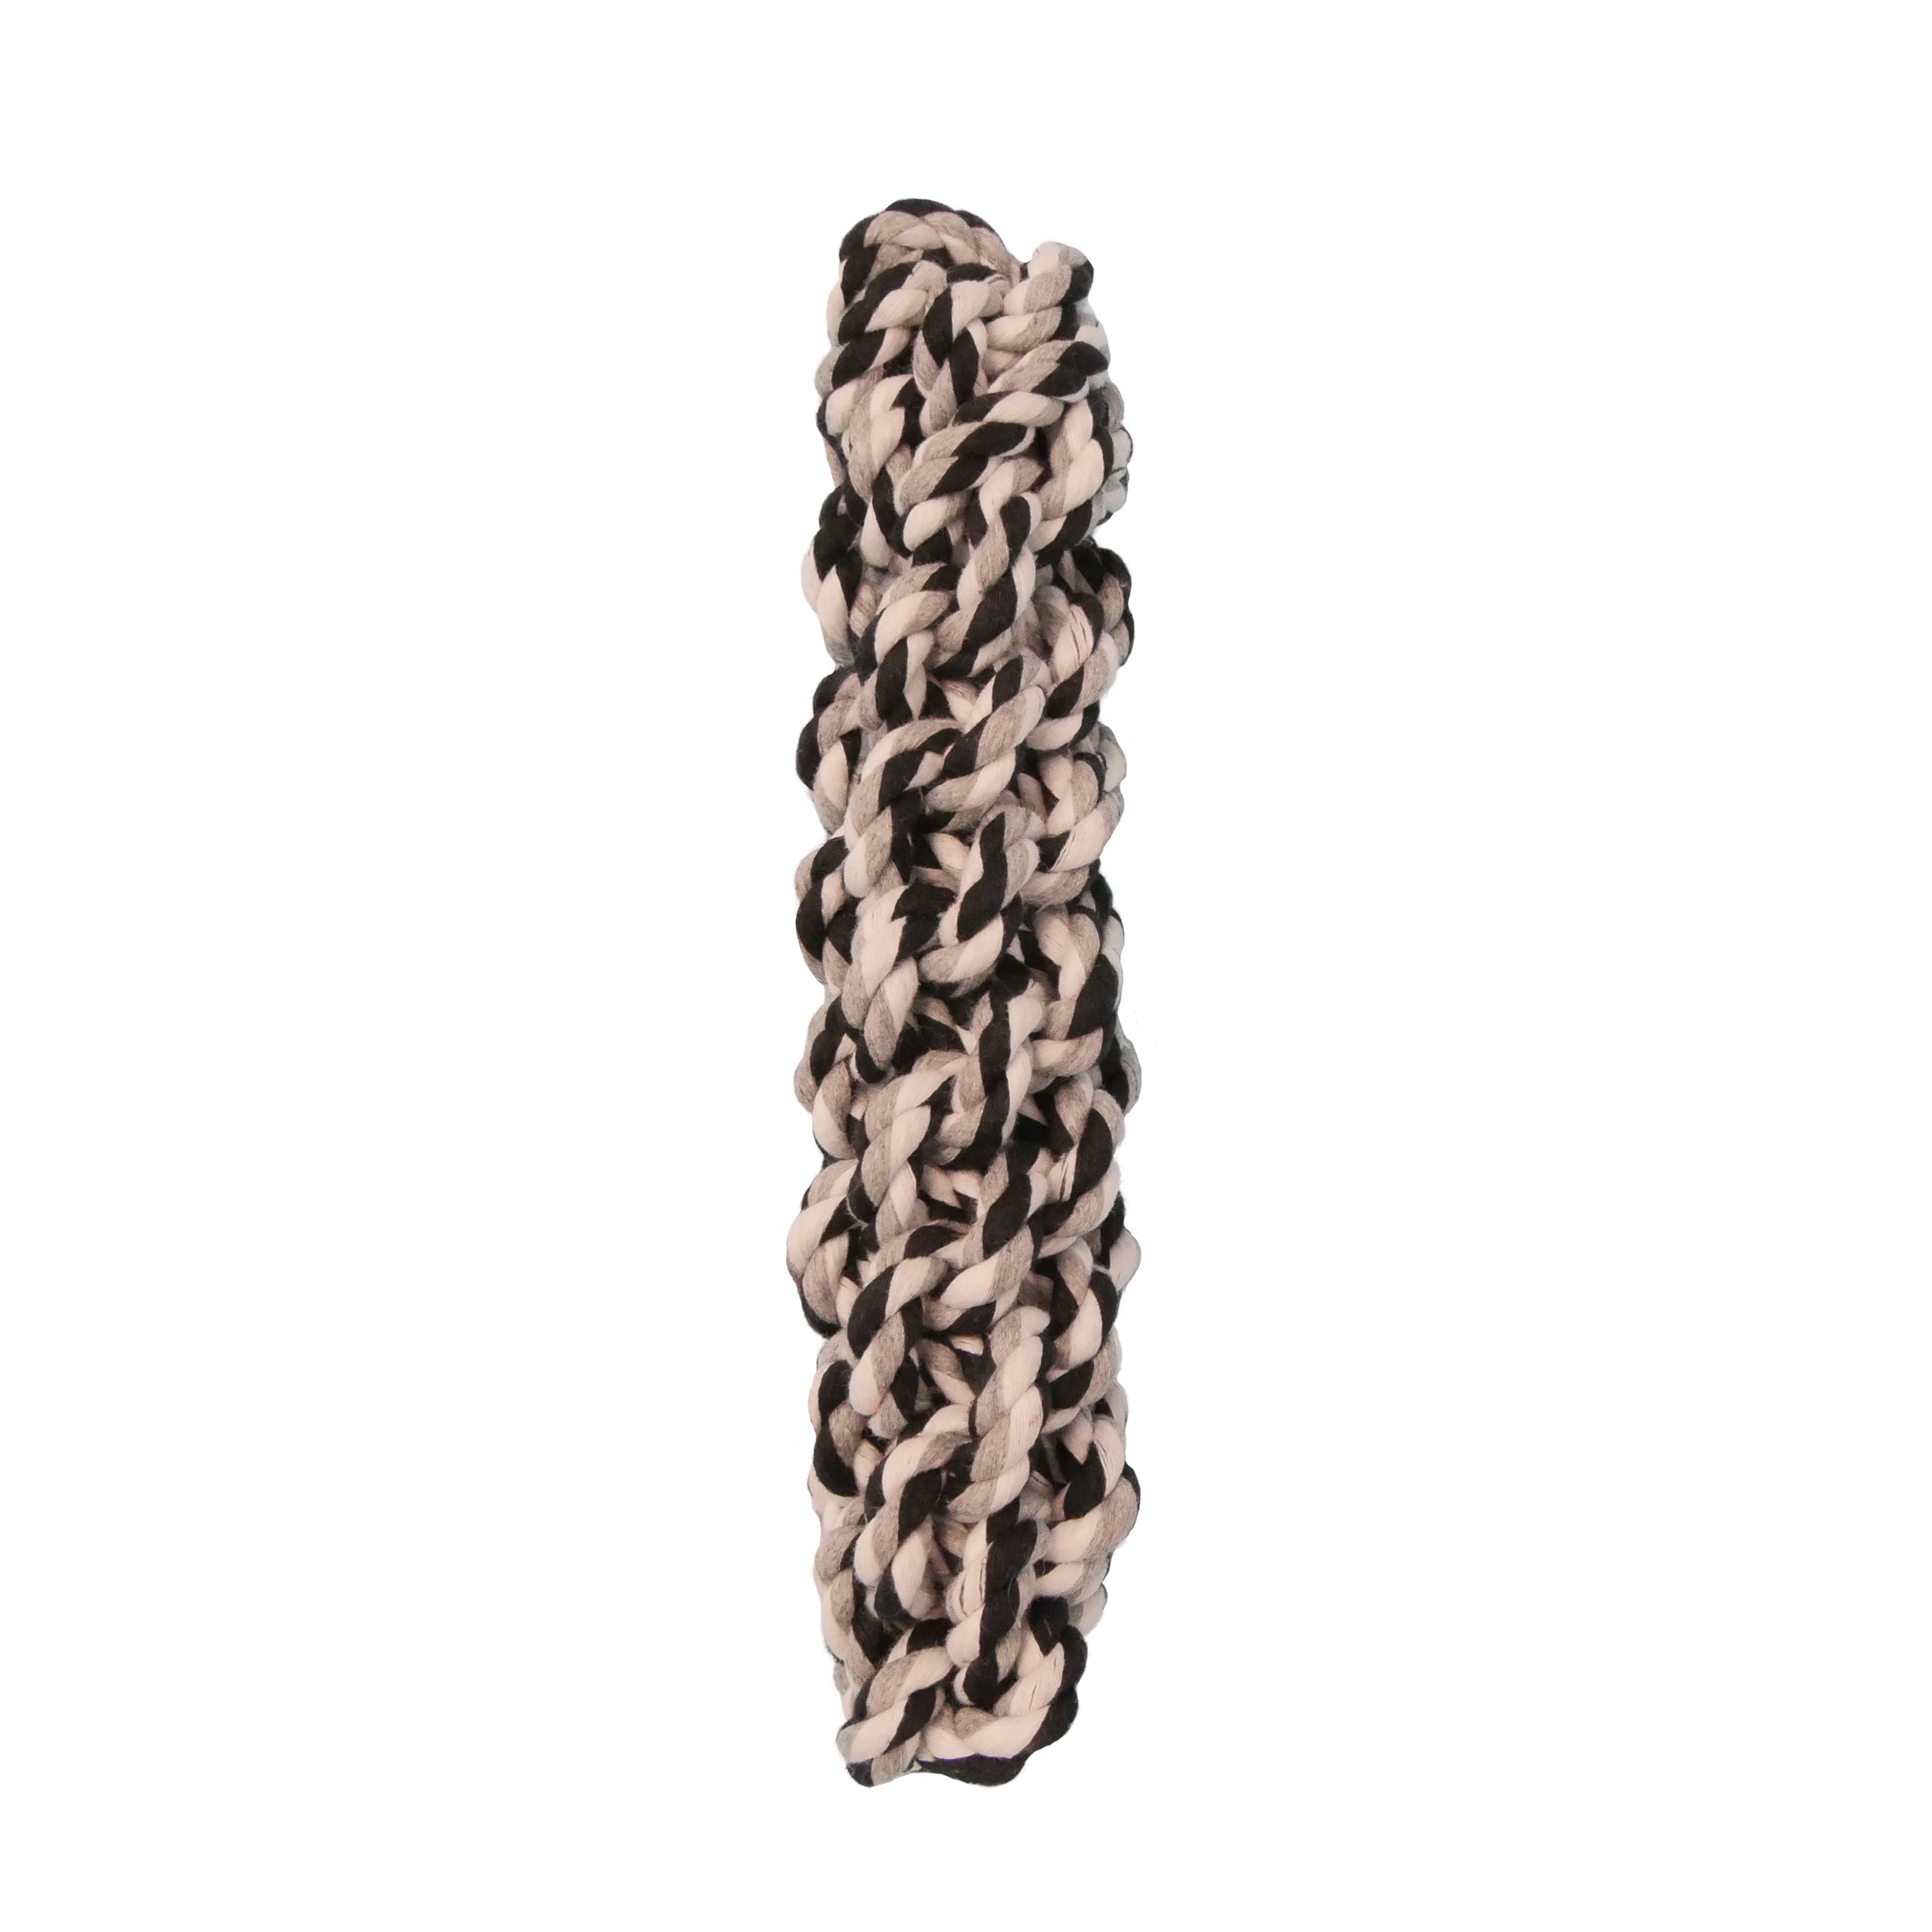 [Dog toy] 2-Sizes Braided Cotton Rope Tug Stick